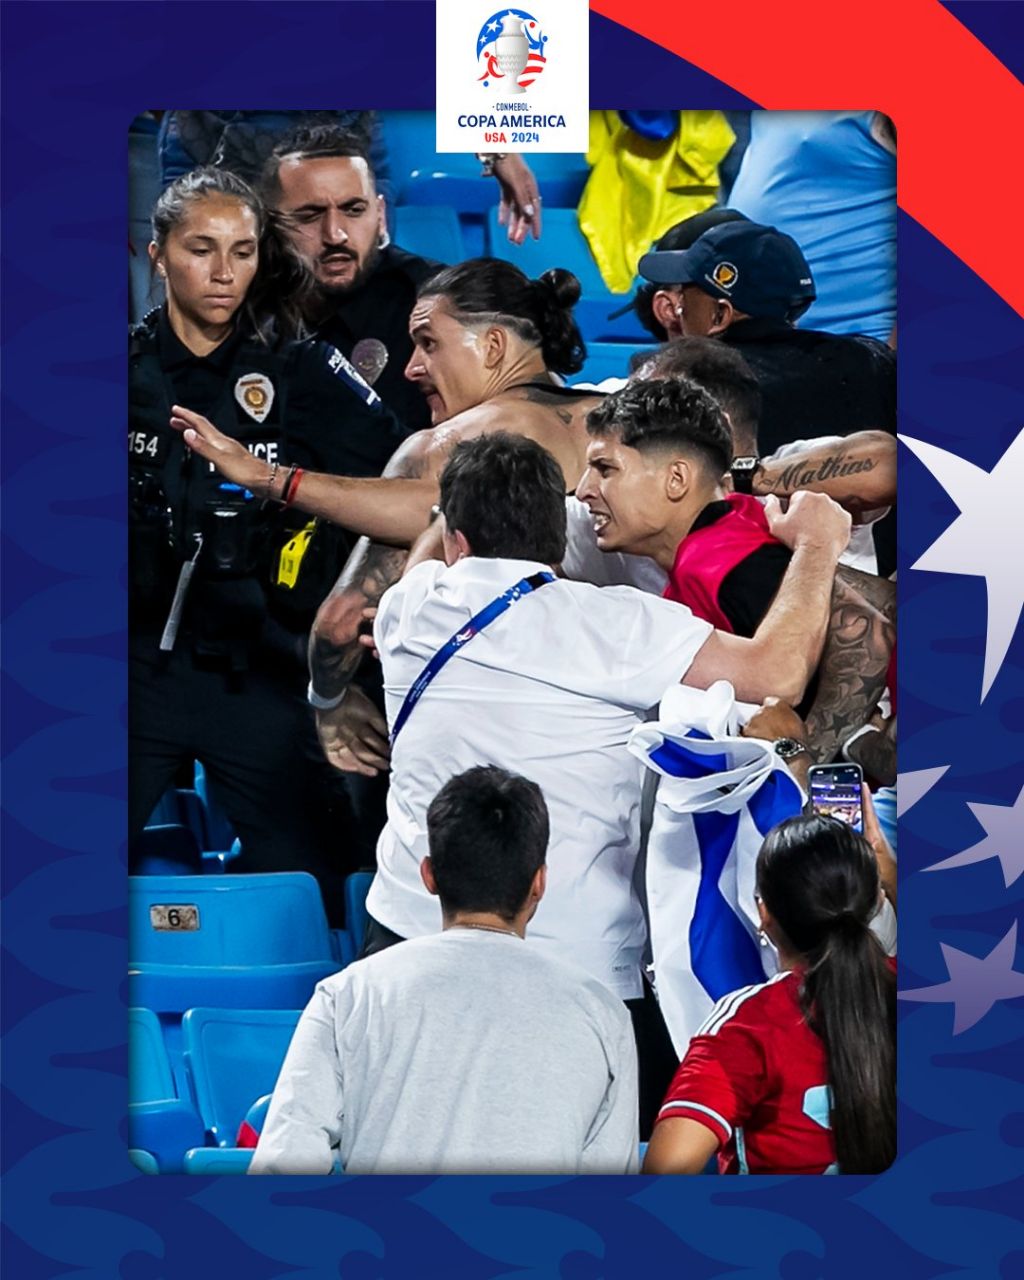 درگیری هواداران کلمبیا با اروگوئه در نیمه نهایی کوپا آمریکا